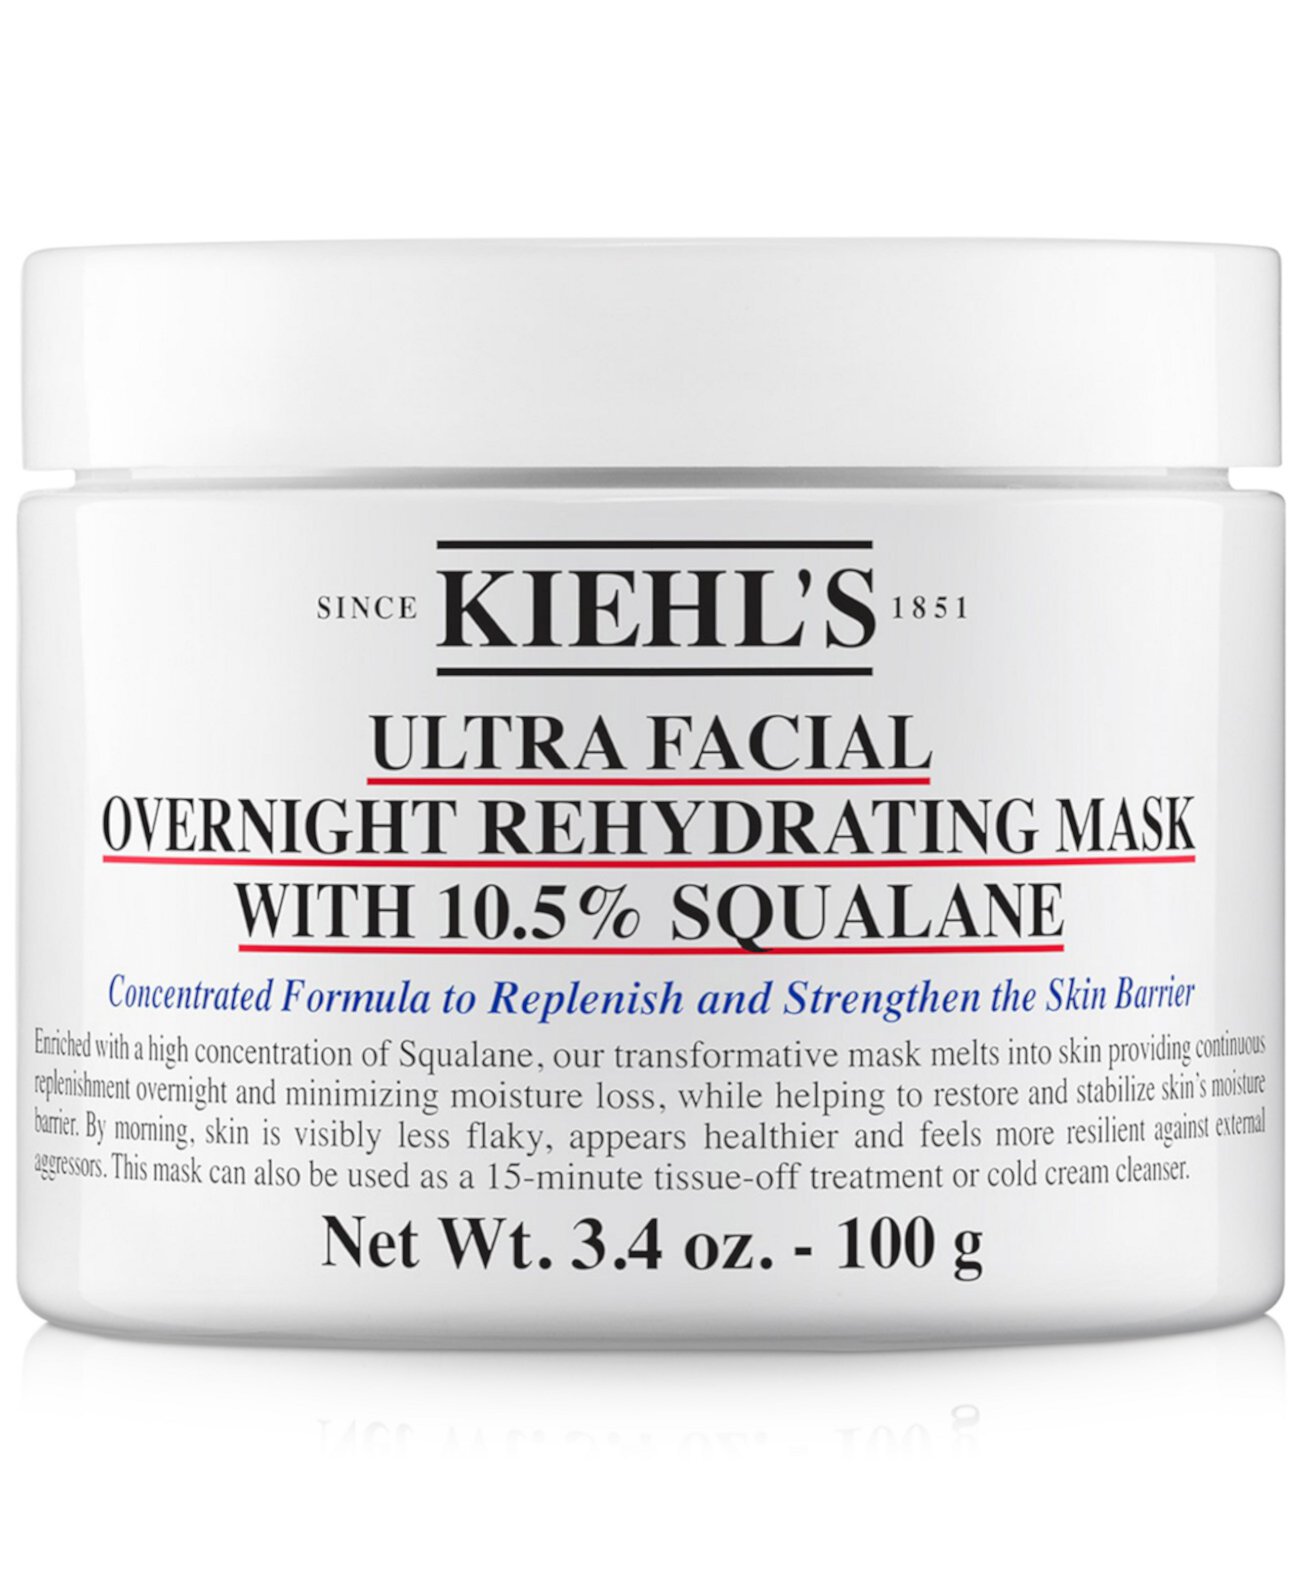 Ночная увлажняющая маска для лица Ultra с 10,5% скваланом, 3,4 унции. Kiehl's Since 1851